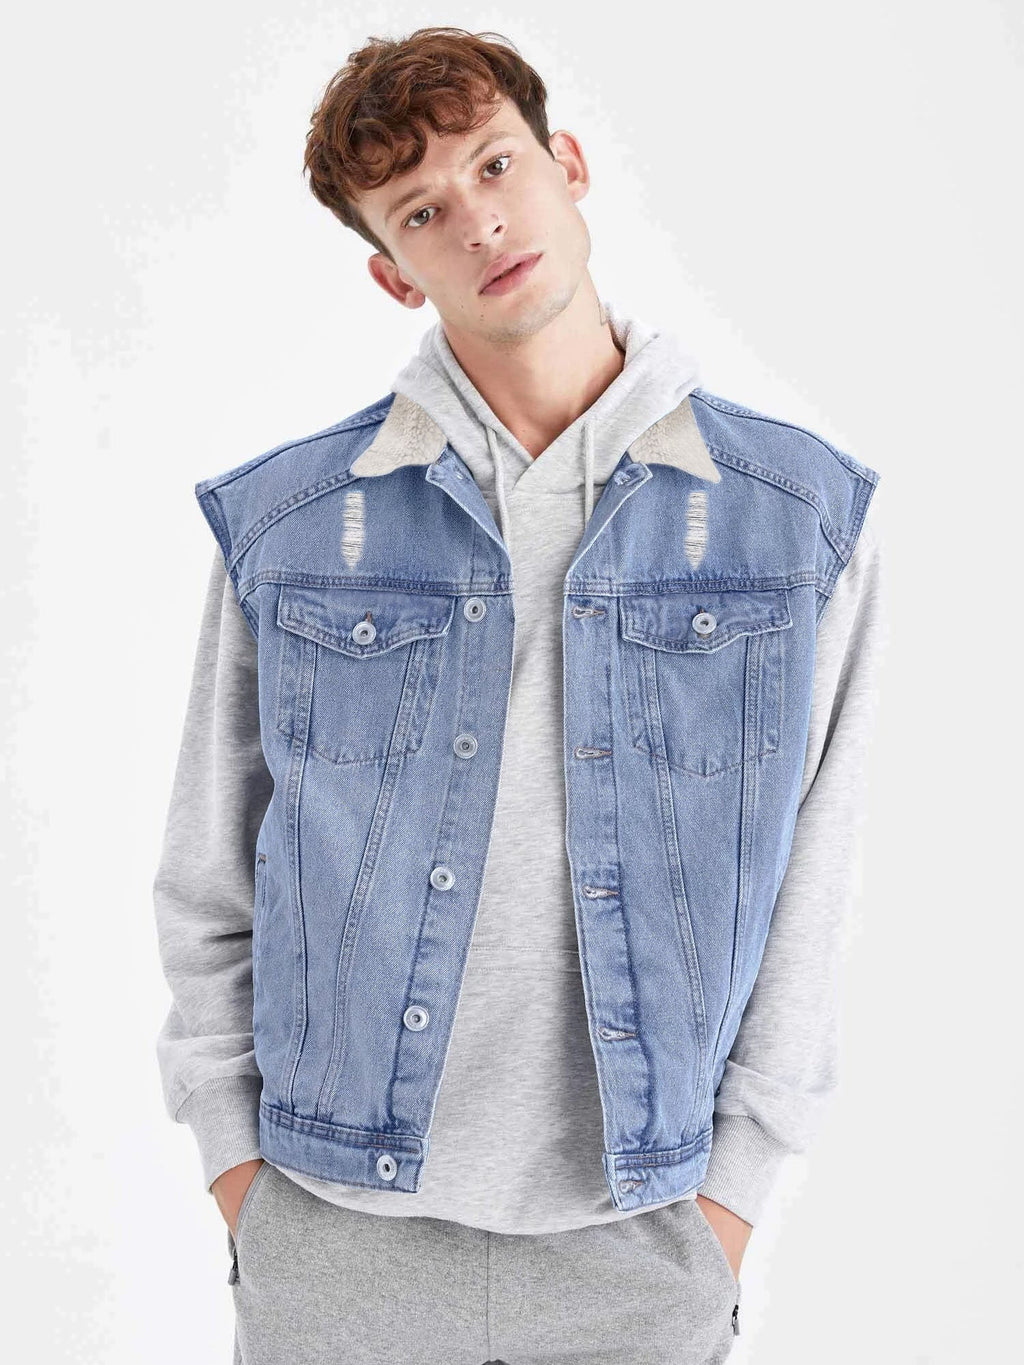 Long Sleeve Plush Fur Denim Jeans Jacket For Men-Blue-BR203 - BrandsEgo